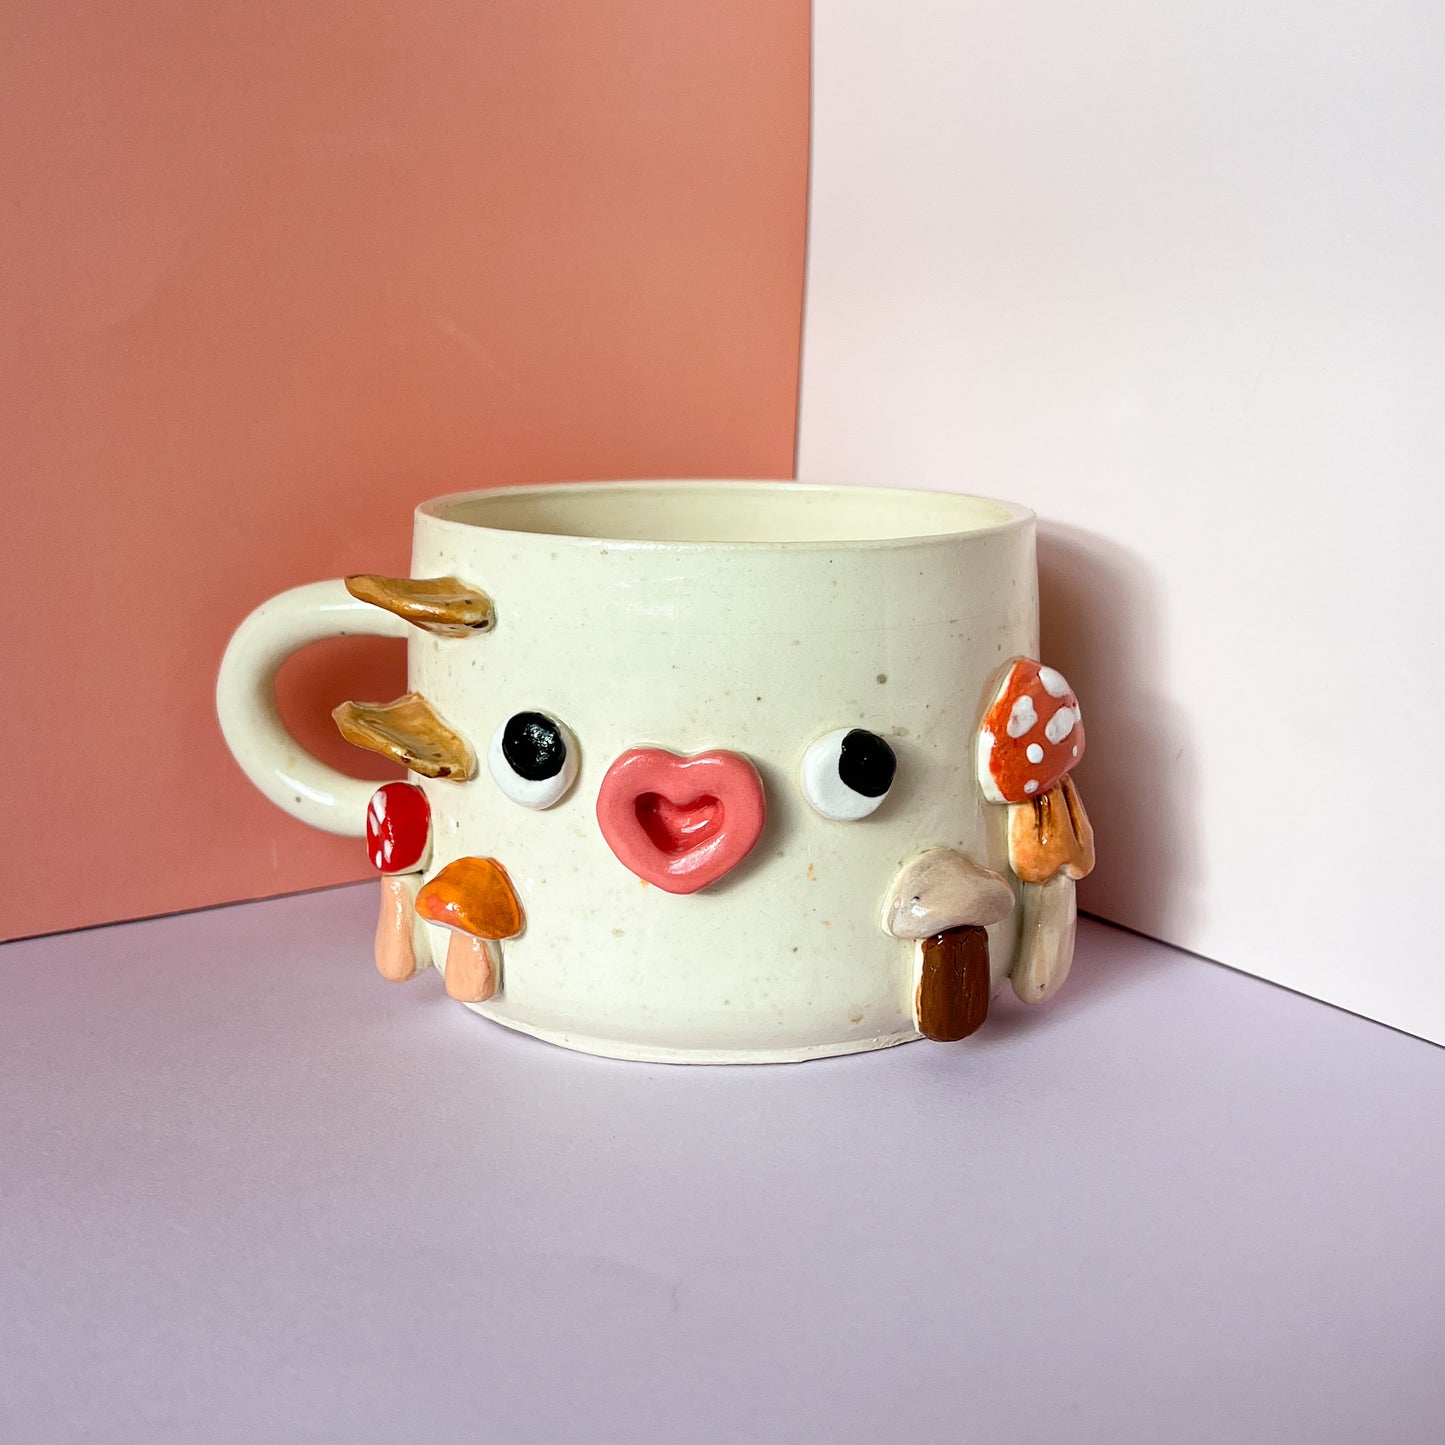 Speckled mushroom mug (Patreon exclusive)